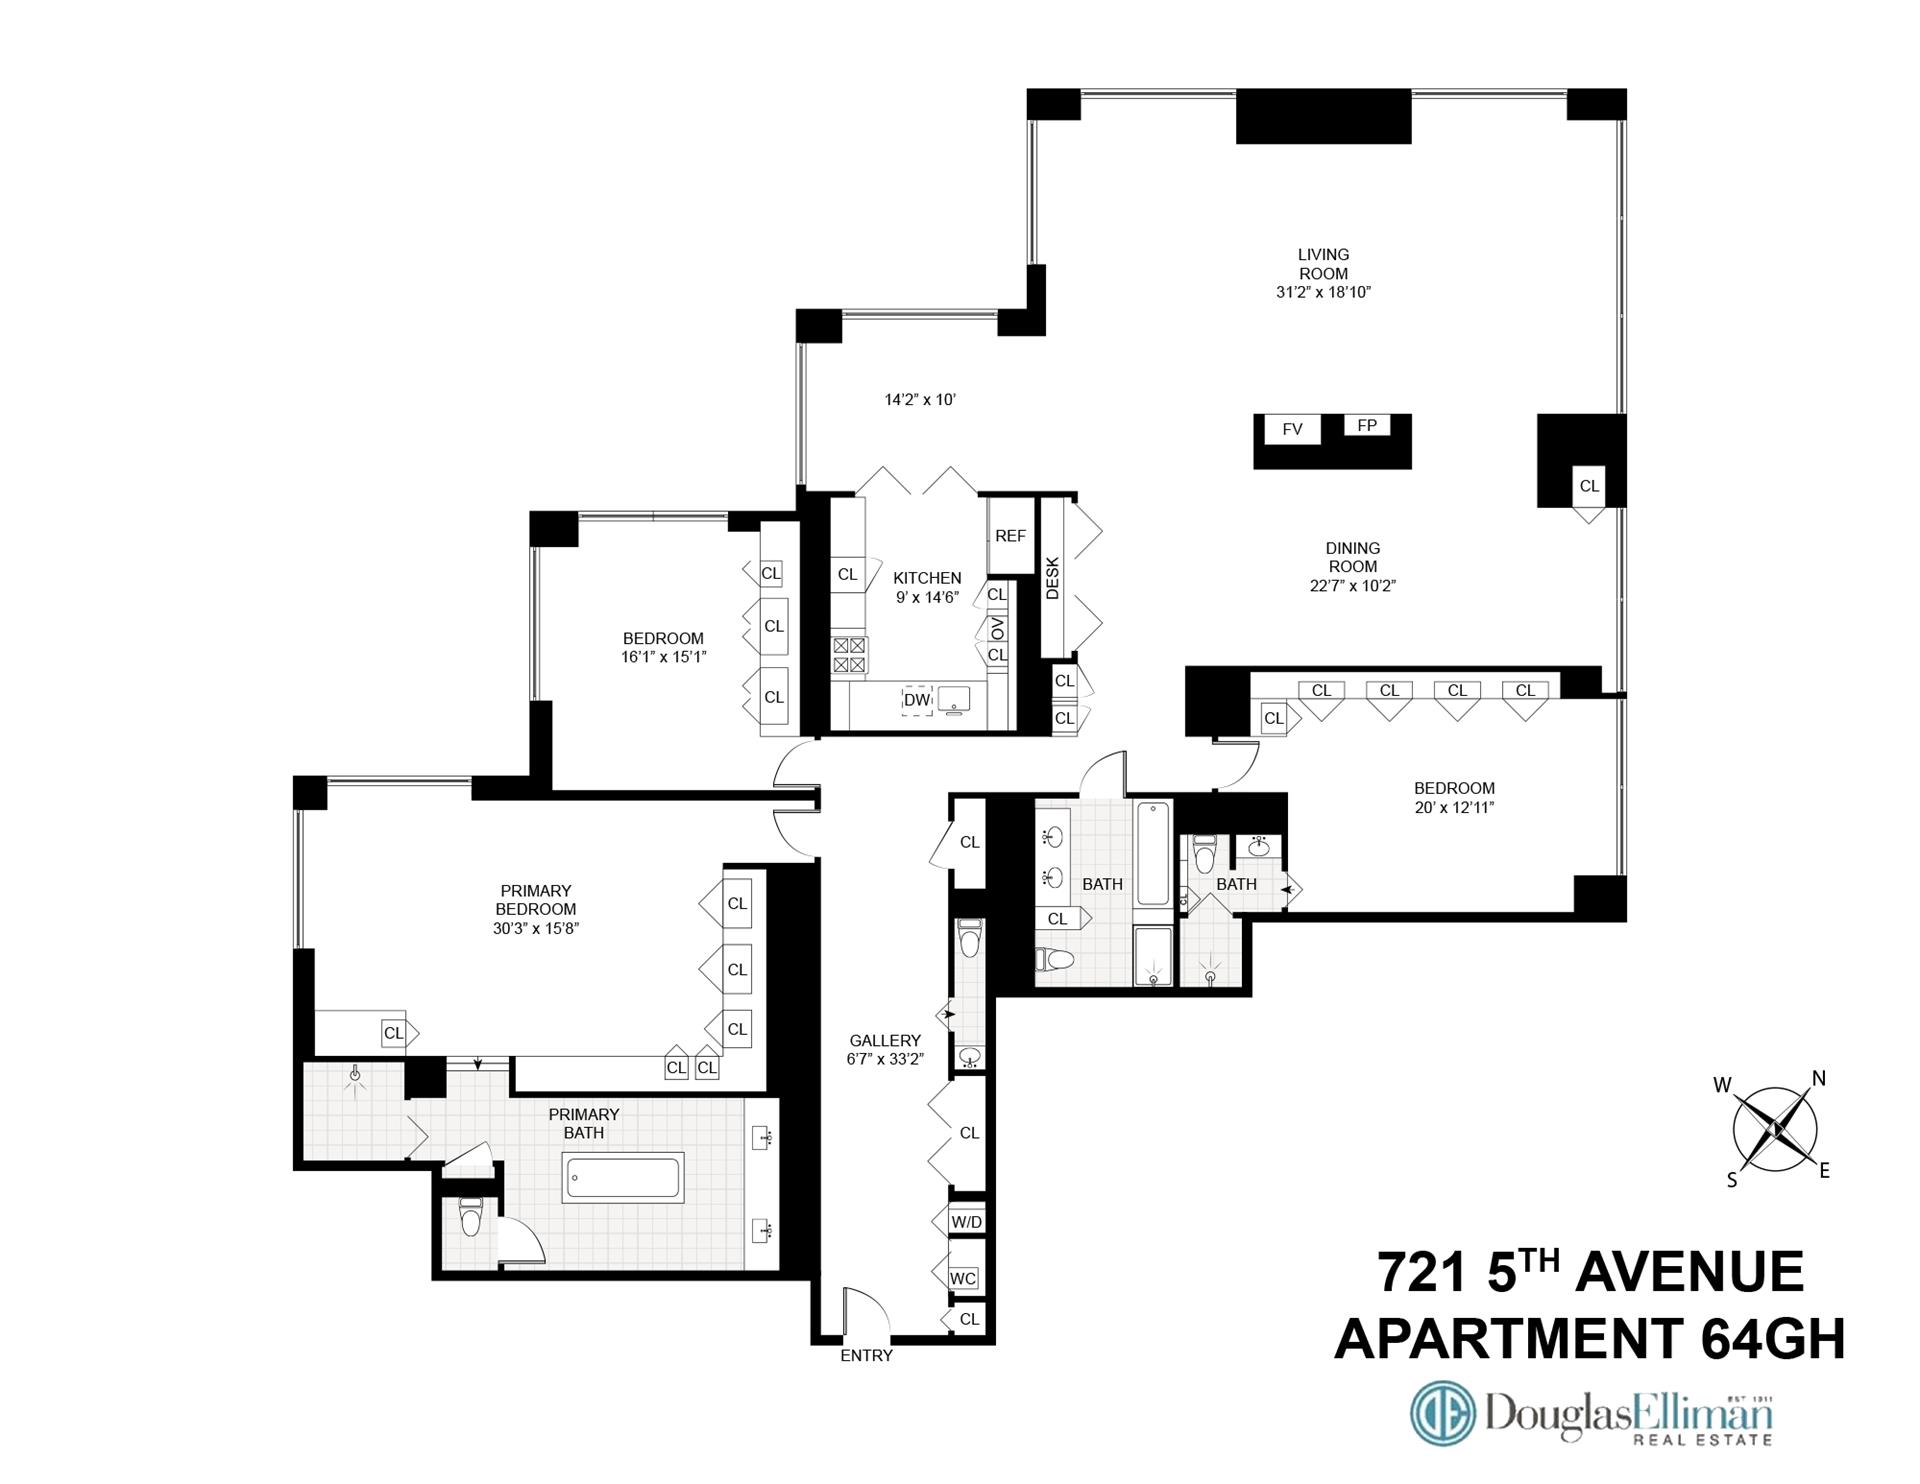 Floorplan for 721 5th Avenue, 64GH